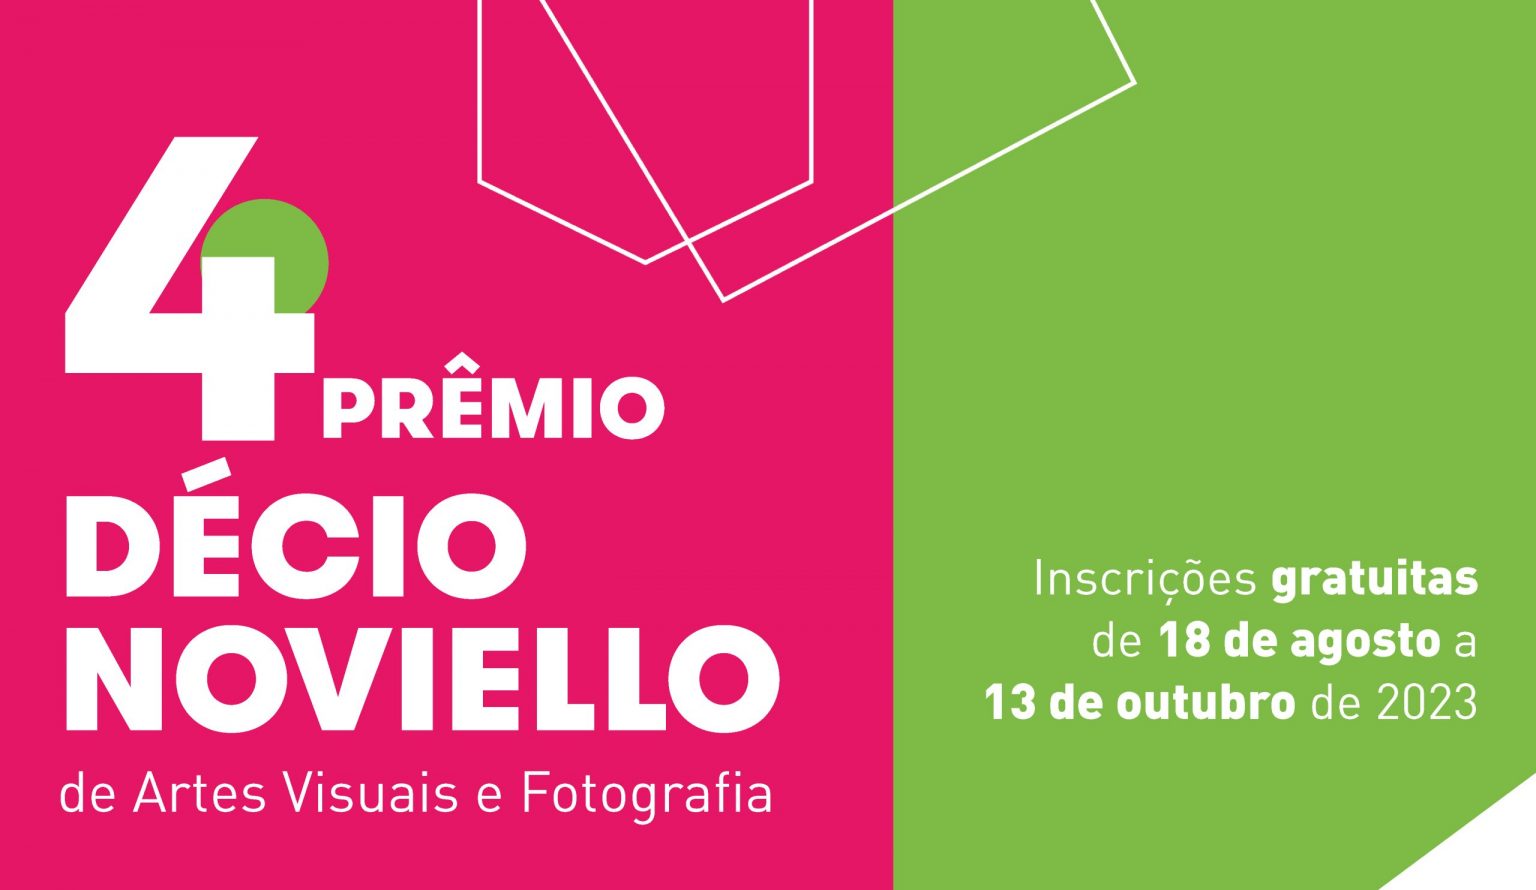 Inscrições abertas para a 4ª edição do Prêmio Décio Noviello de Artes Visuais e Fotografia